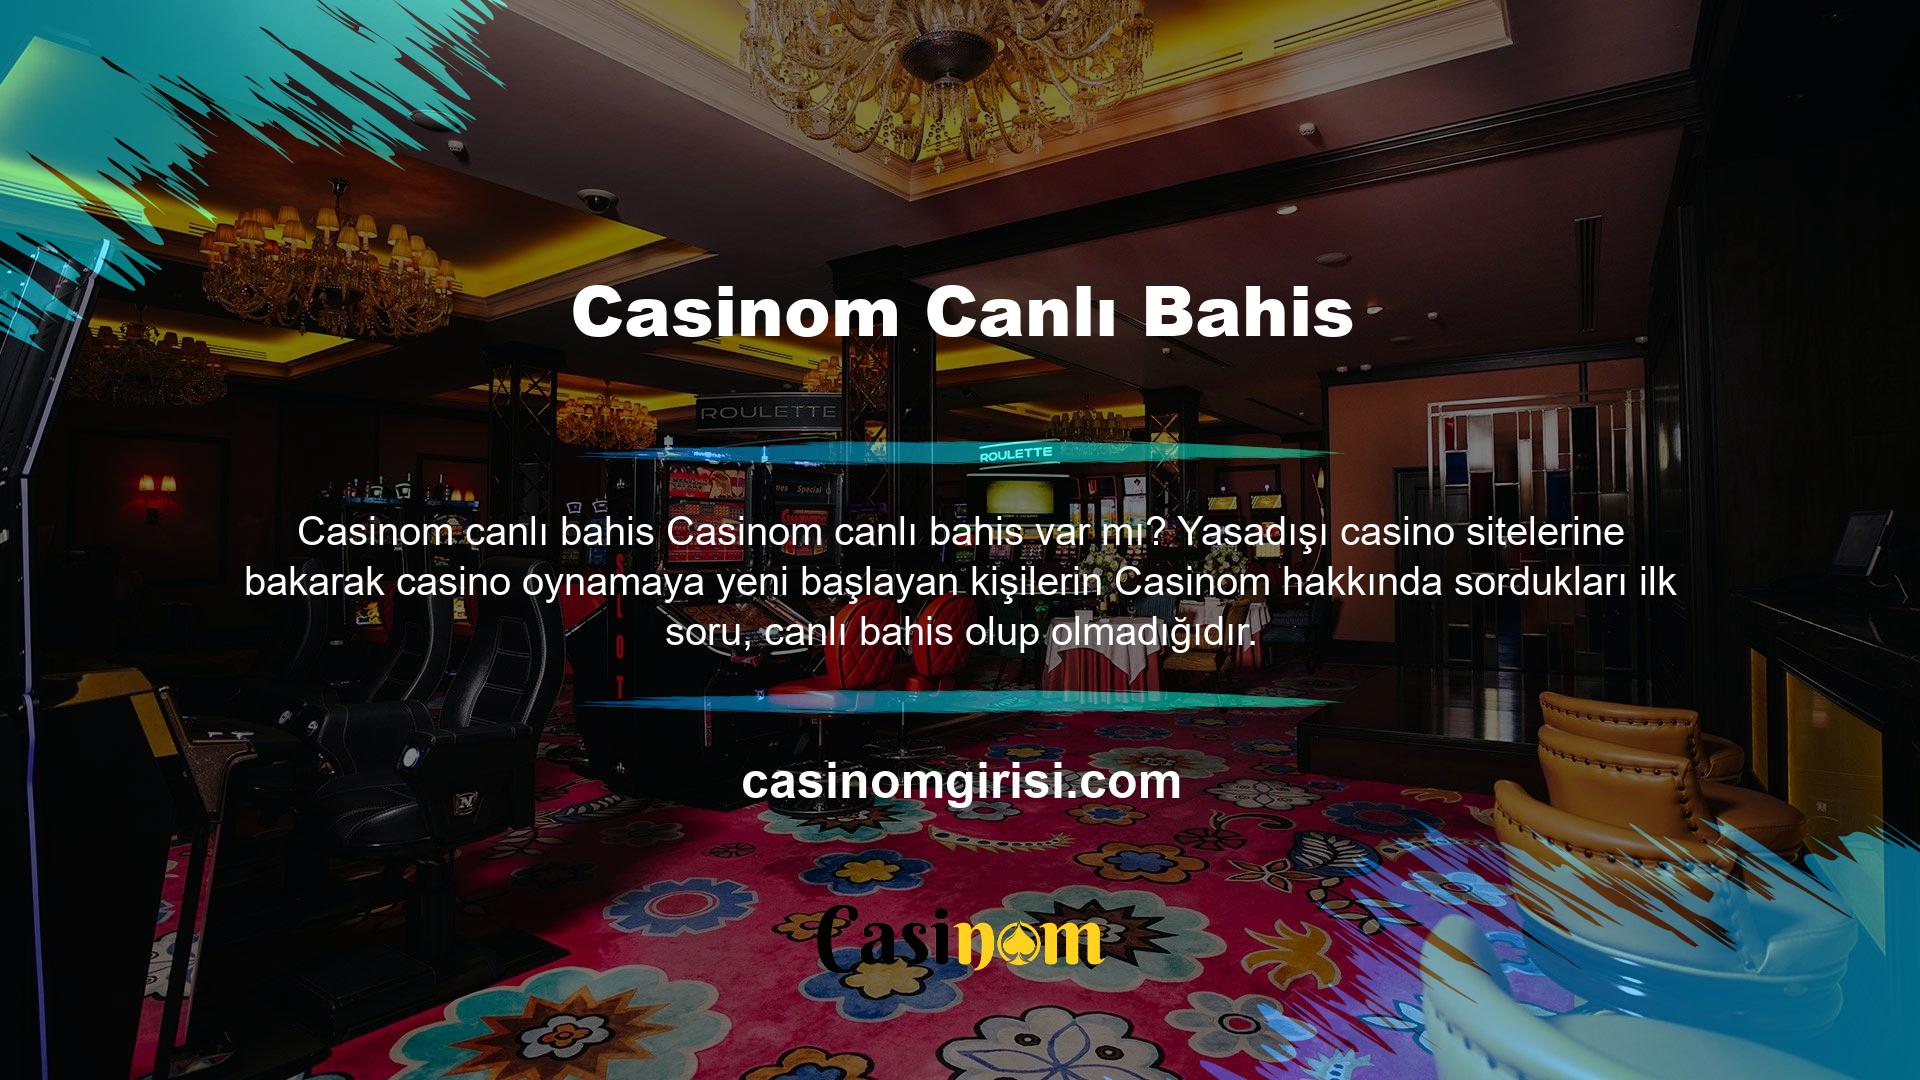 Peki Casinom canlı bahis var mı? Casinom, 'canlı bahis' özelliği ile yasa dışı casino sektörünün başladığı en eski sitelerden biridir